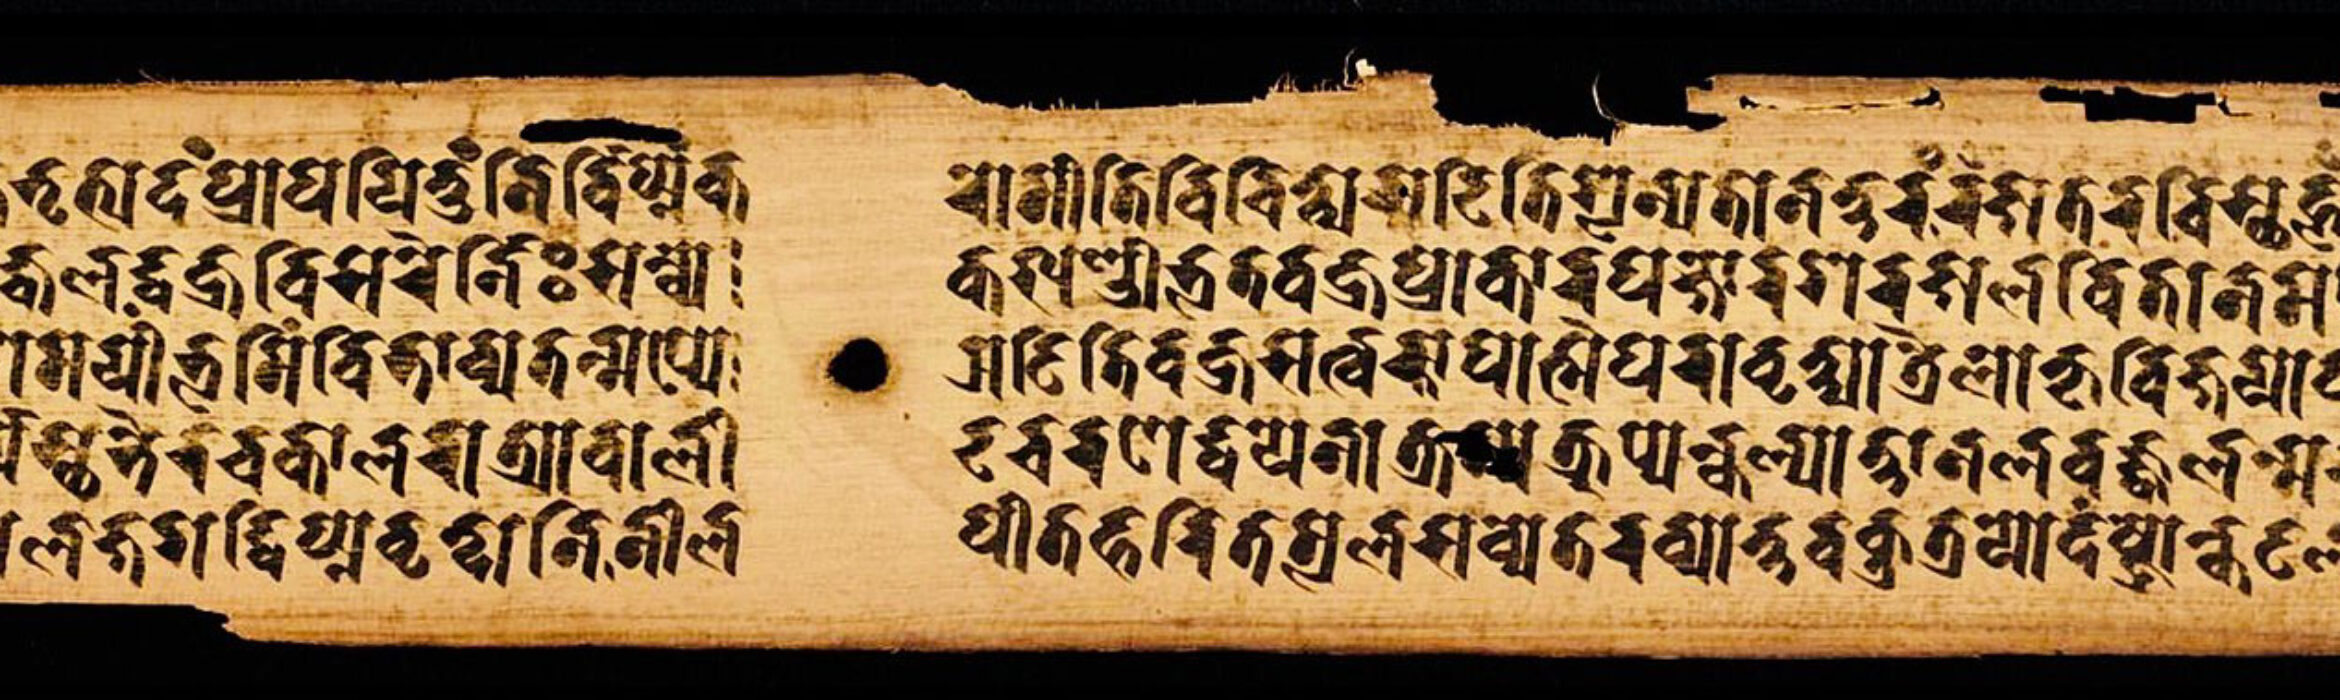 印證高端佛學講座系列: 哲學、哲學家與佛教論藏文獻（Śāstra）